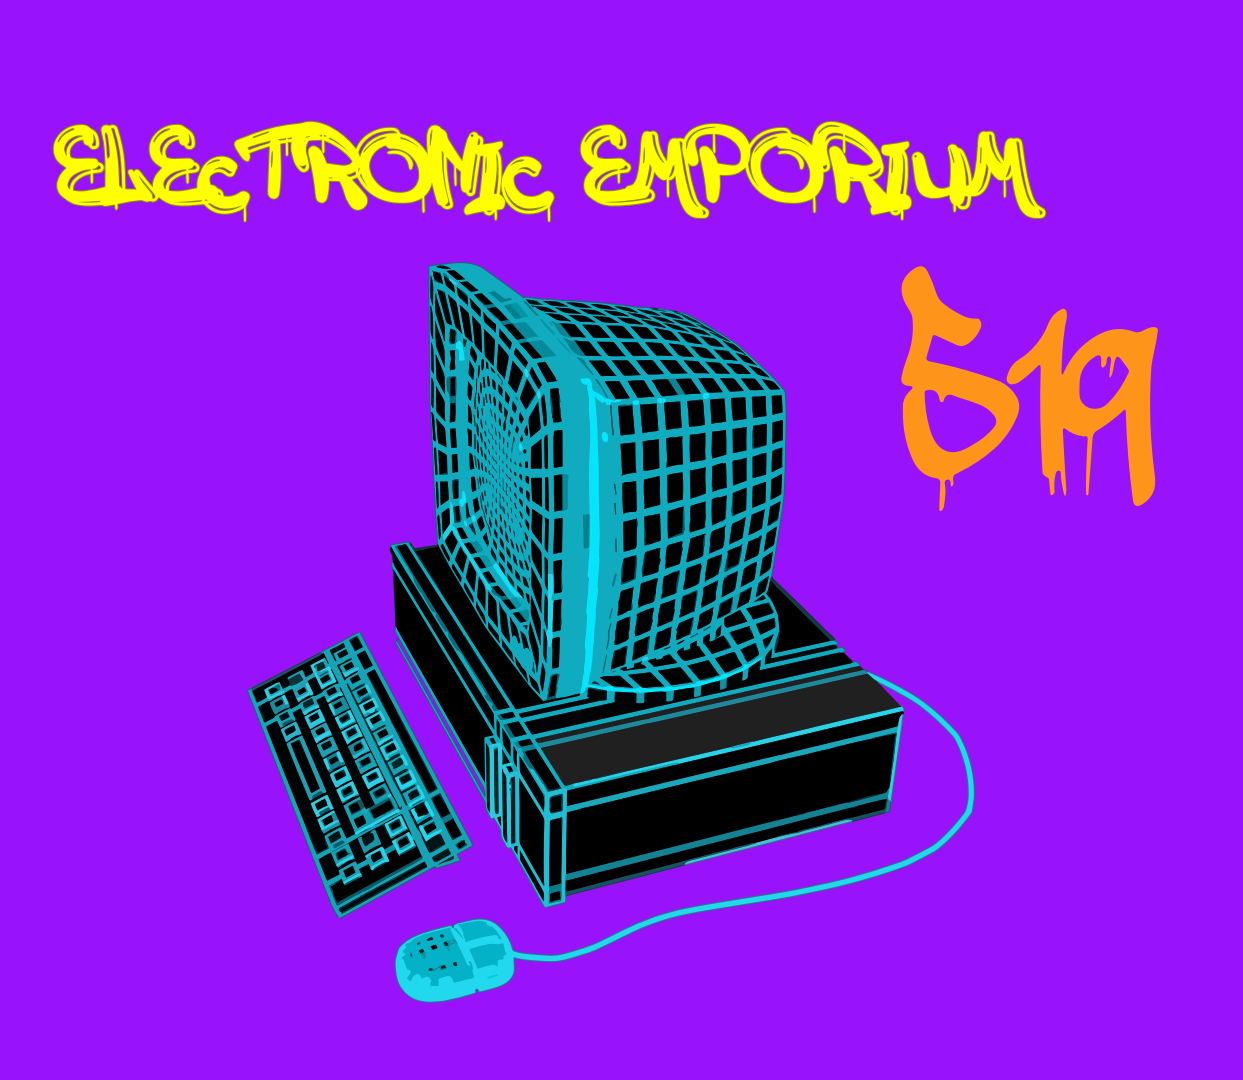 Electronic Emporium 519